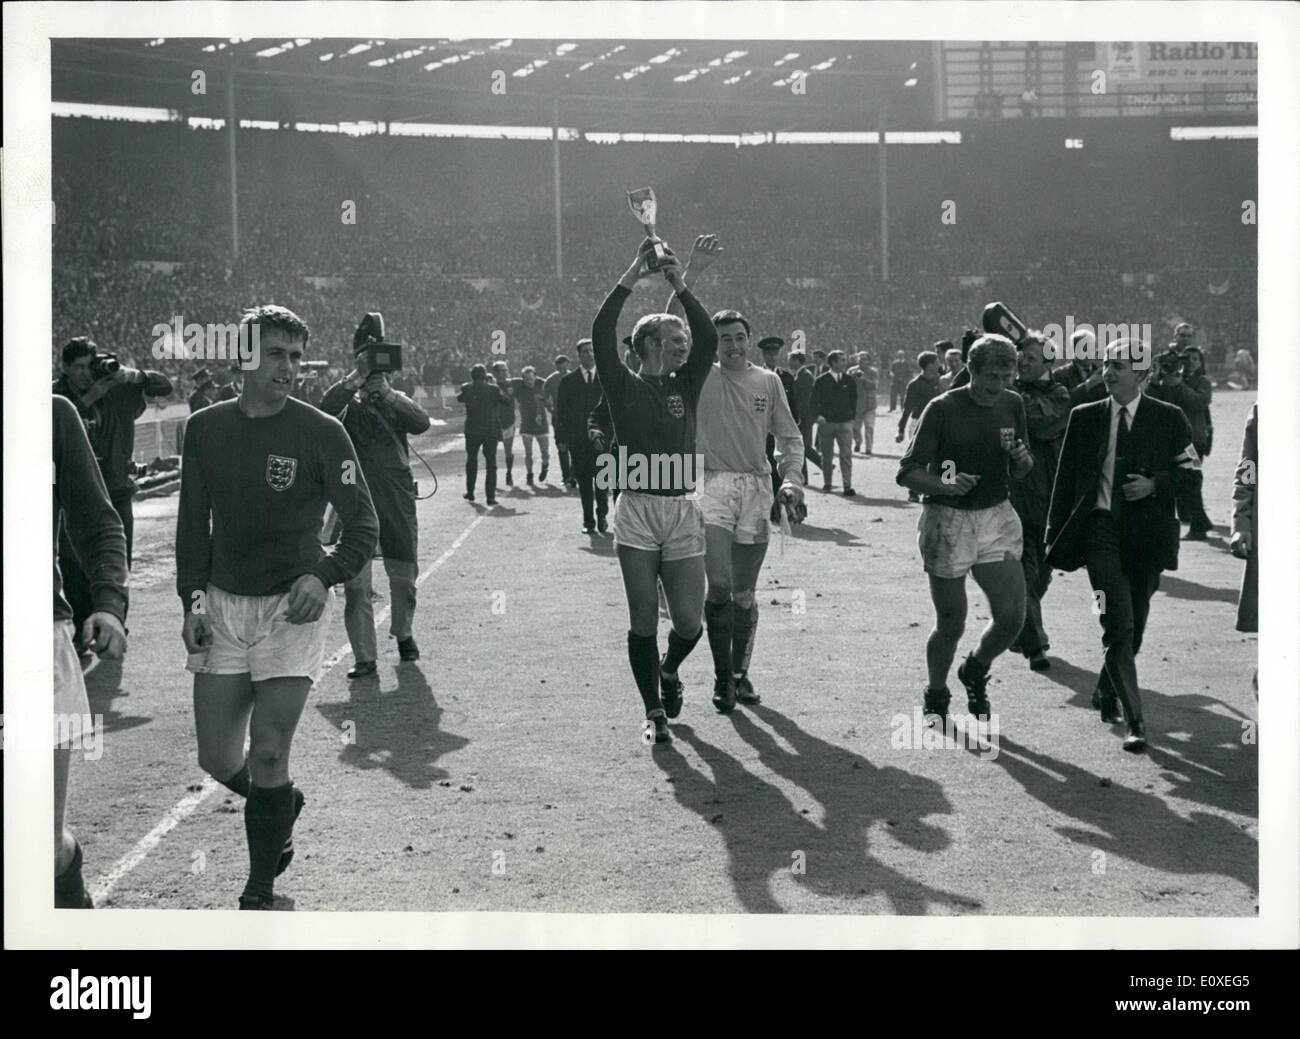 Lug. 07, 1966 - Calcio 1966 Coppa del mondo. La finale Inghilterra V. Germania Ovest allo Stadio di Wembley. In Inghilterra ha vinto 4-2 dopo un tempo supplementare.: Bobby Moore (l'Inghilterra del capitano) conduce la sua squadra intorno al Wembley passo dopo Inghilterra di Coppa del Mondo di vittoria finale contro la Germania Ovest. Foto Stock